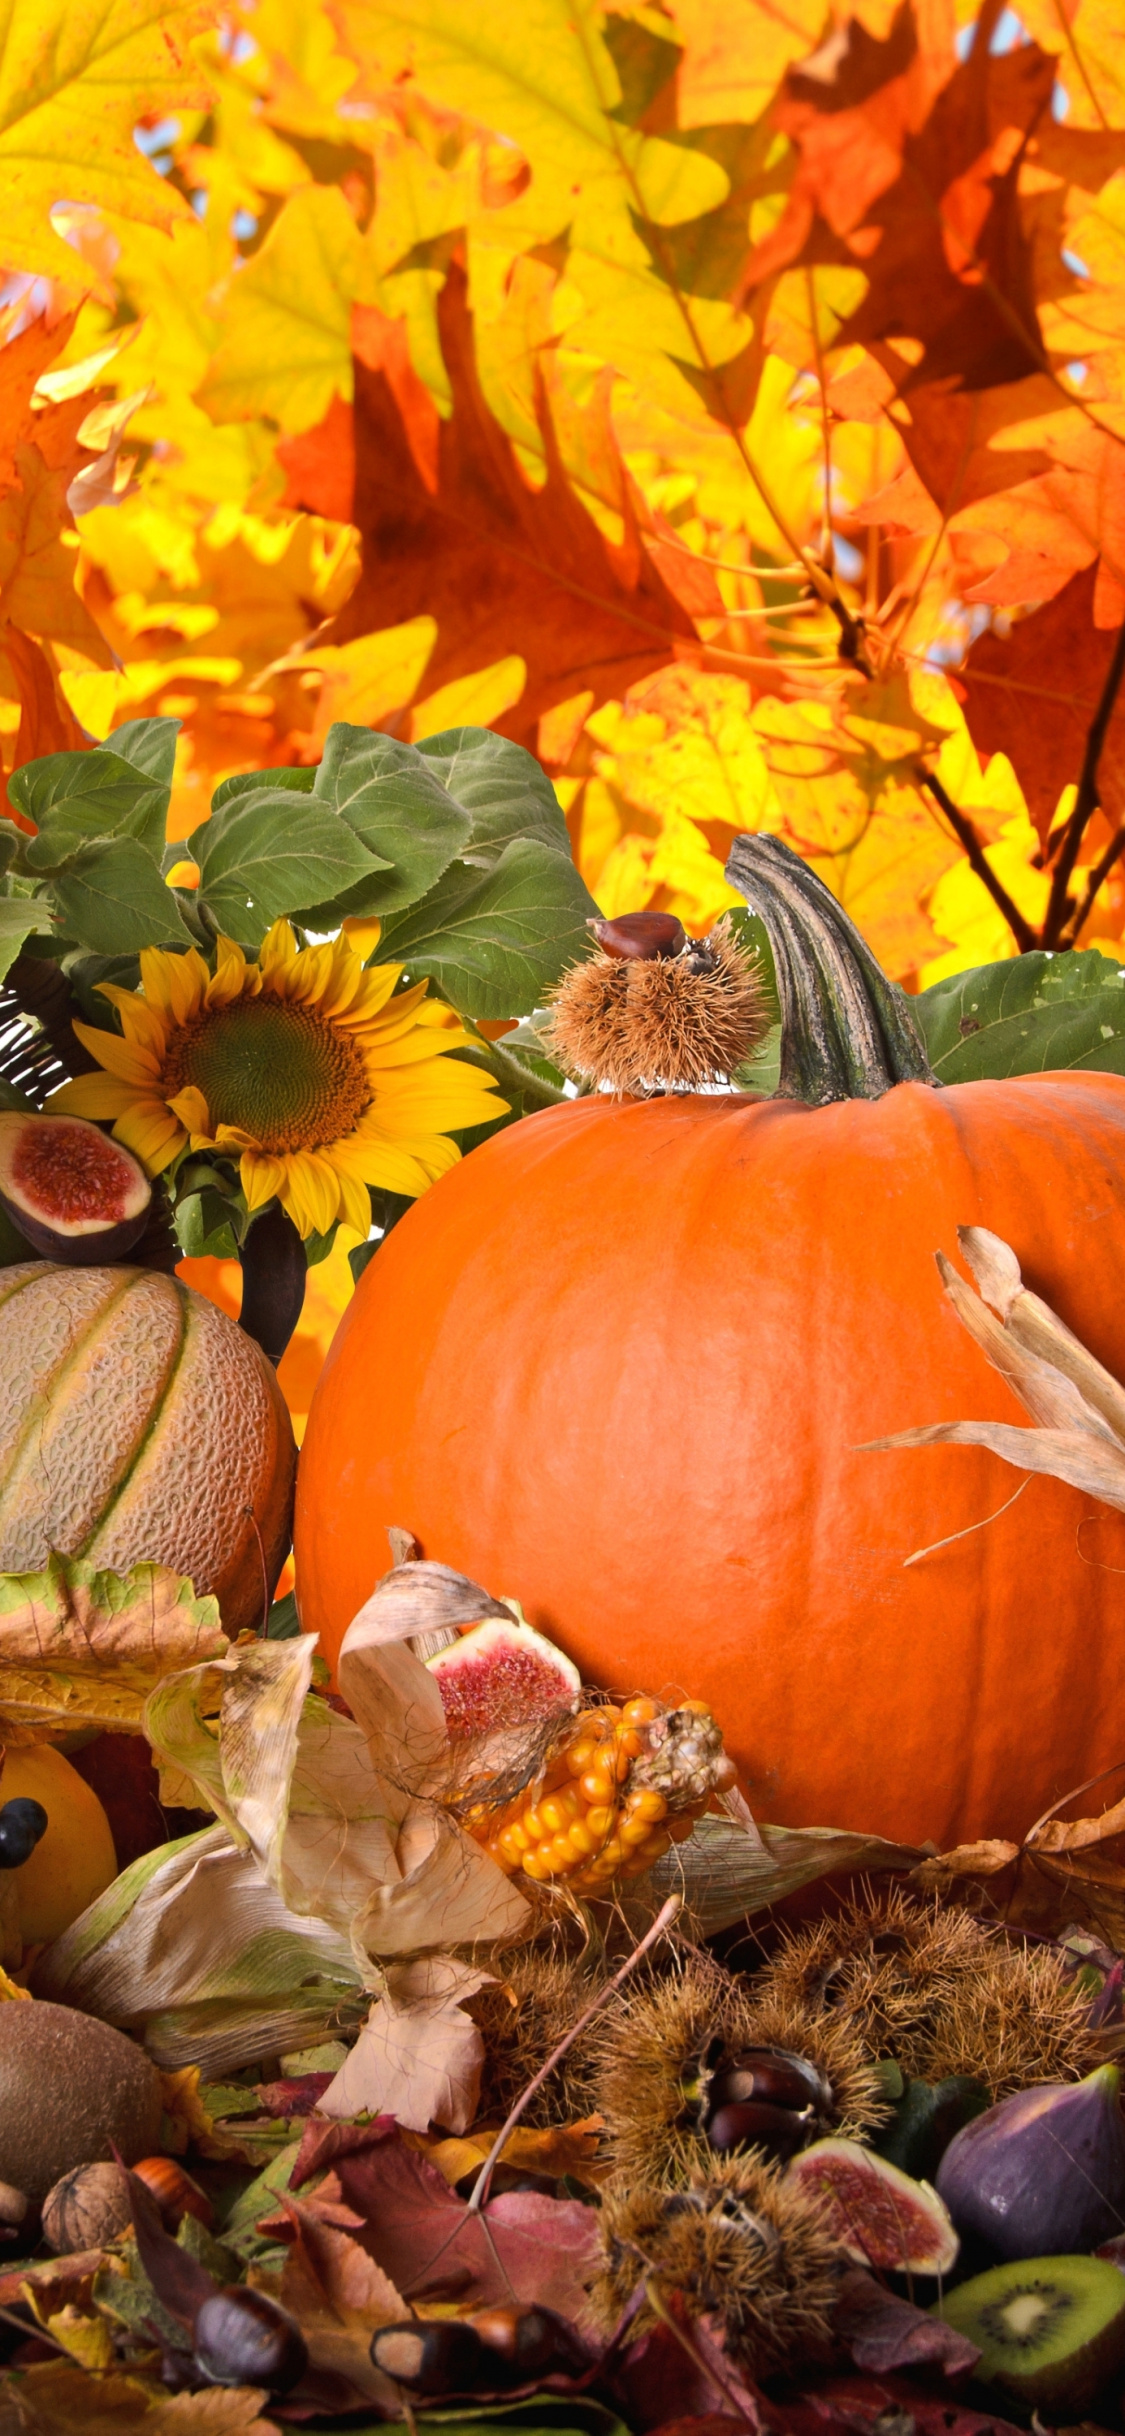 Pumpkin, Gourd, Harvest, Thanksgiving, Food Wallpaper